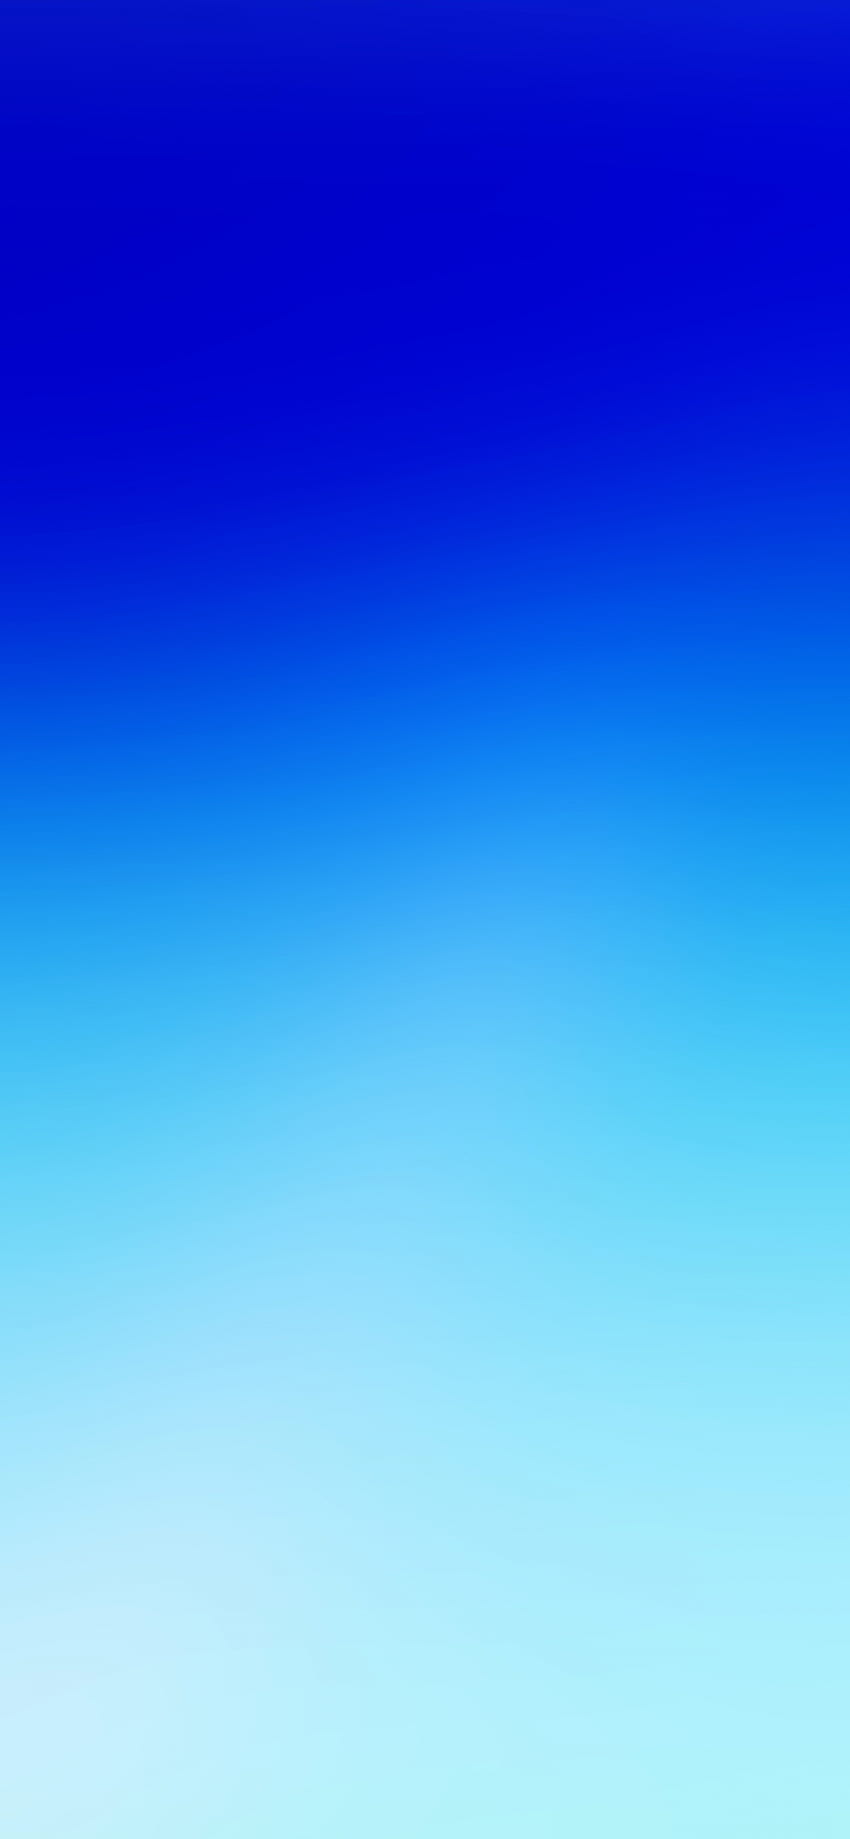 ブルー iPhone 背景 ユニークな 10 無地 iPhone ブラック ホワイト グレー レッド ブルー その他 iOS ハッカーのインスピレーション - ハドソンの左 HD電話の壁紙